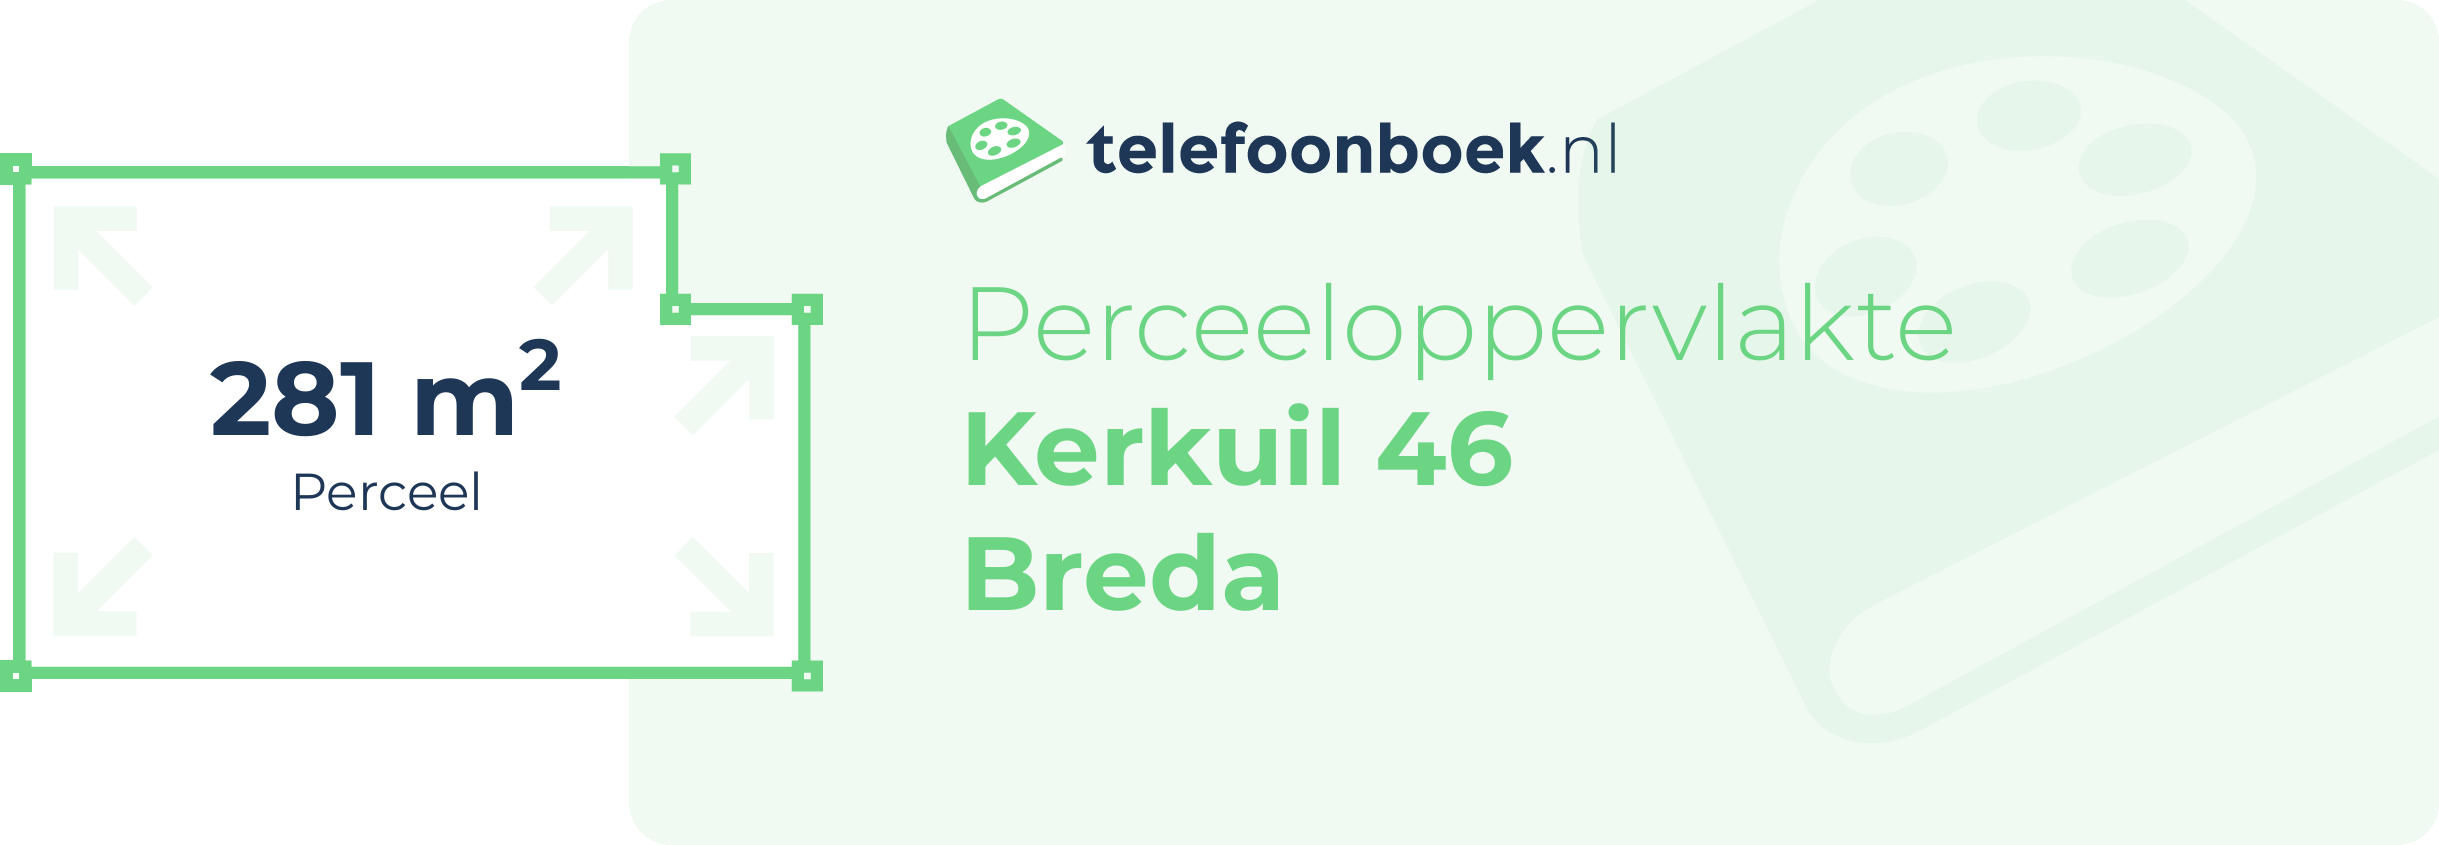 Perceeloppervlakte Kerkuil 46 Breda